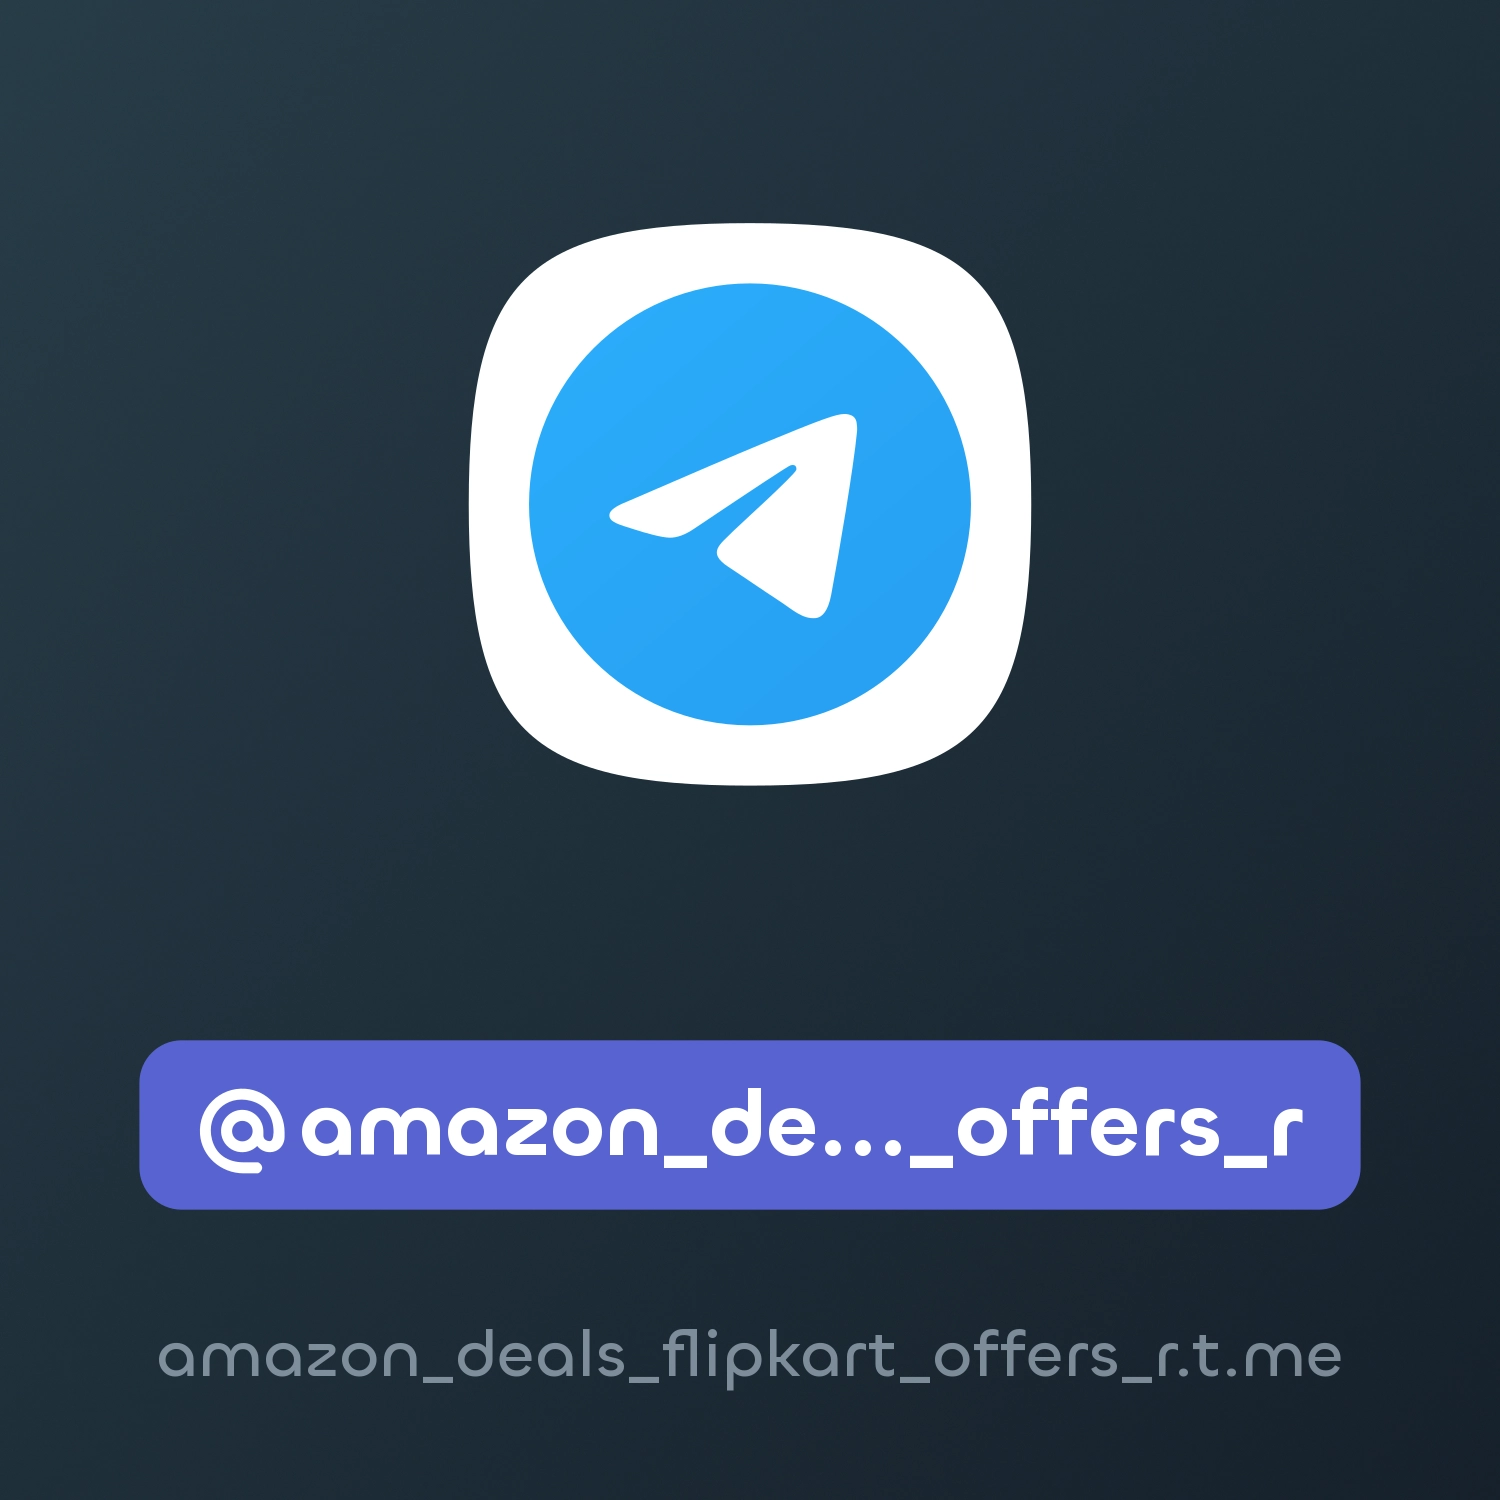 @amazon_deals_flipkart_offers_r